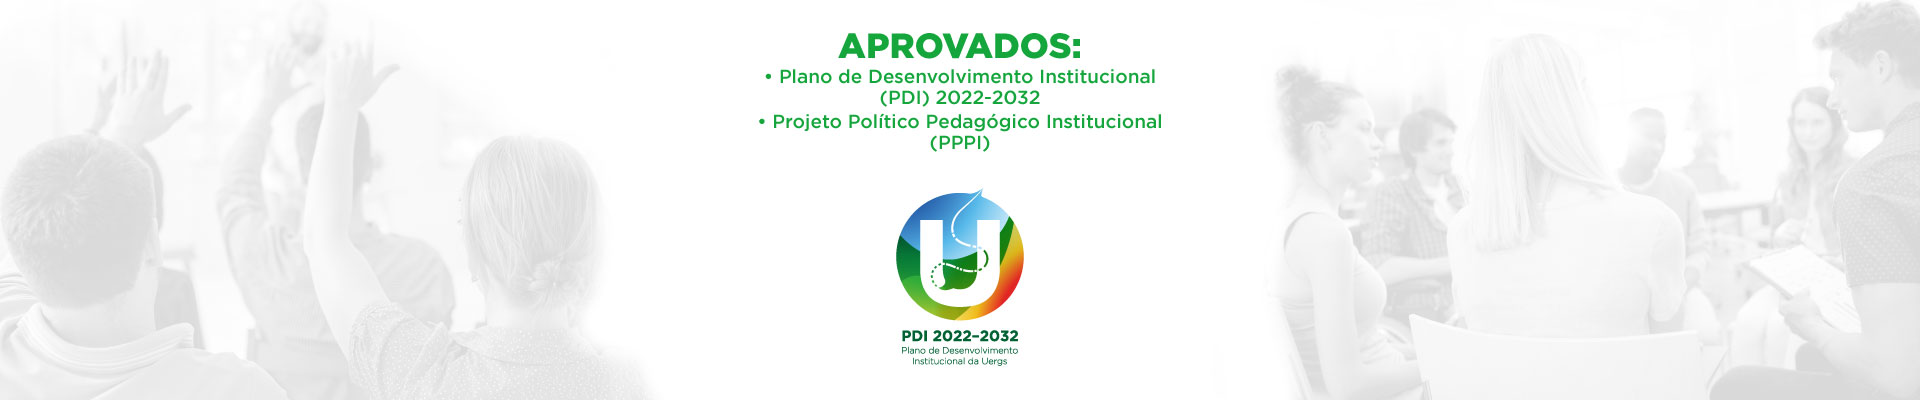 Sobre fundo claro com imagens de pessoas reunidas nas laterais. Ao centro, o texto em laranja "Aprovados: Plano de Desenvolvimento Institucional da Uergs (PDI) 2022-2032; Projeto Político-Pedagógico Institucional (PPPI). Abaixo, o logo do PDI.